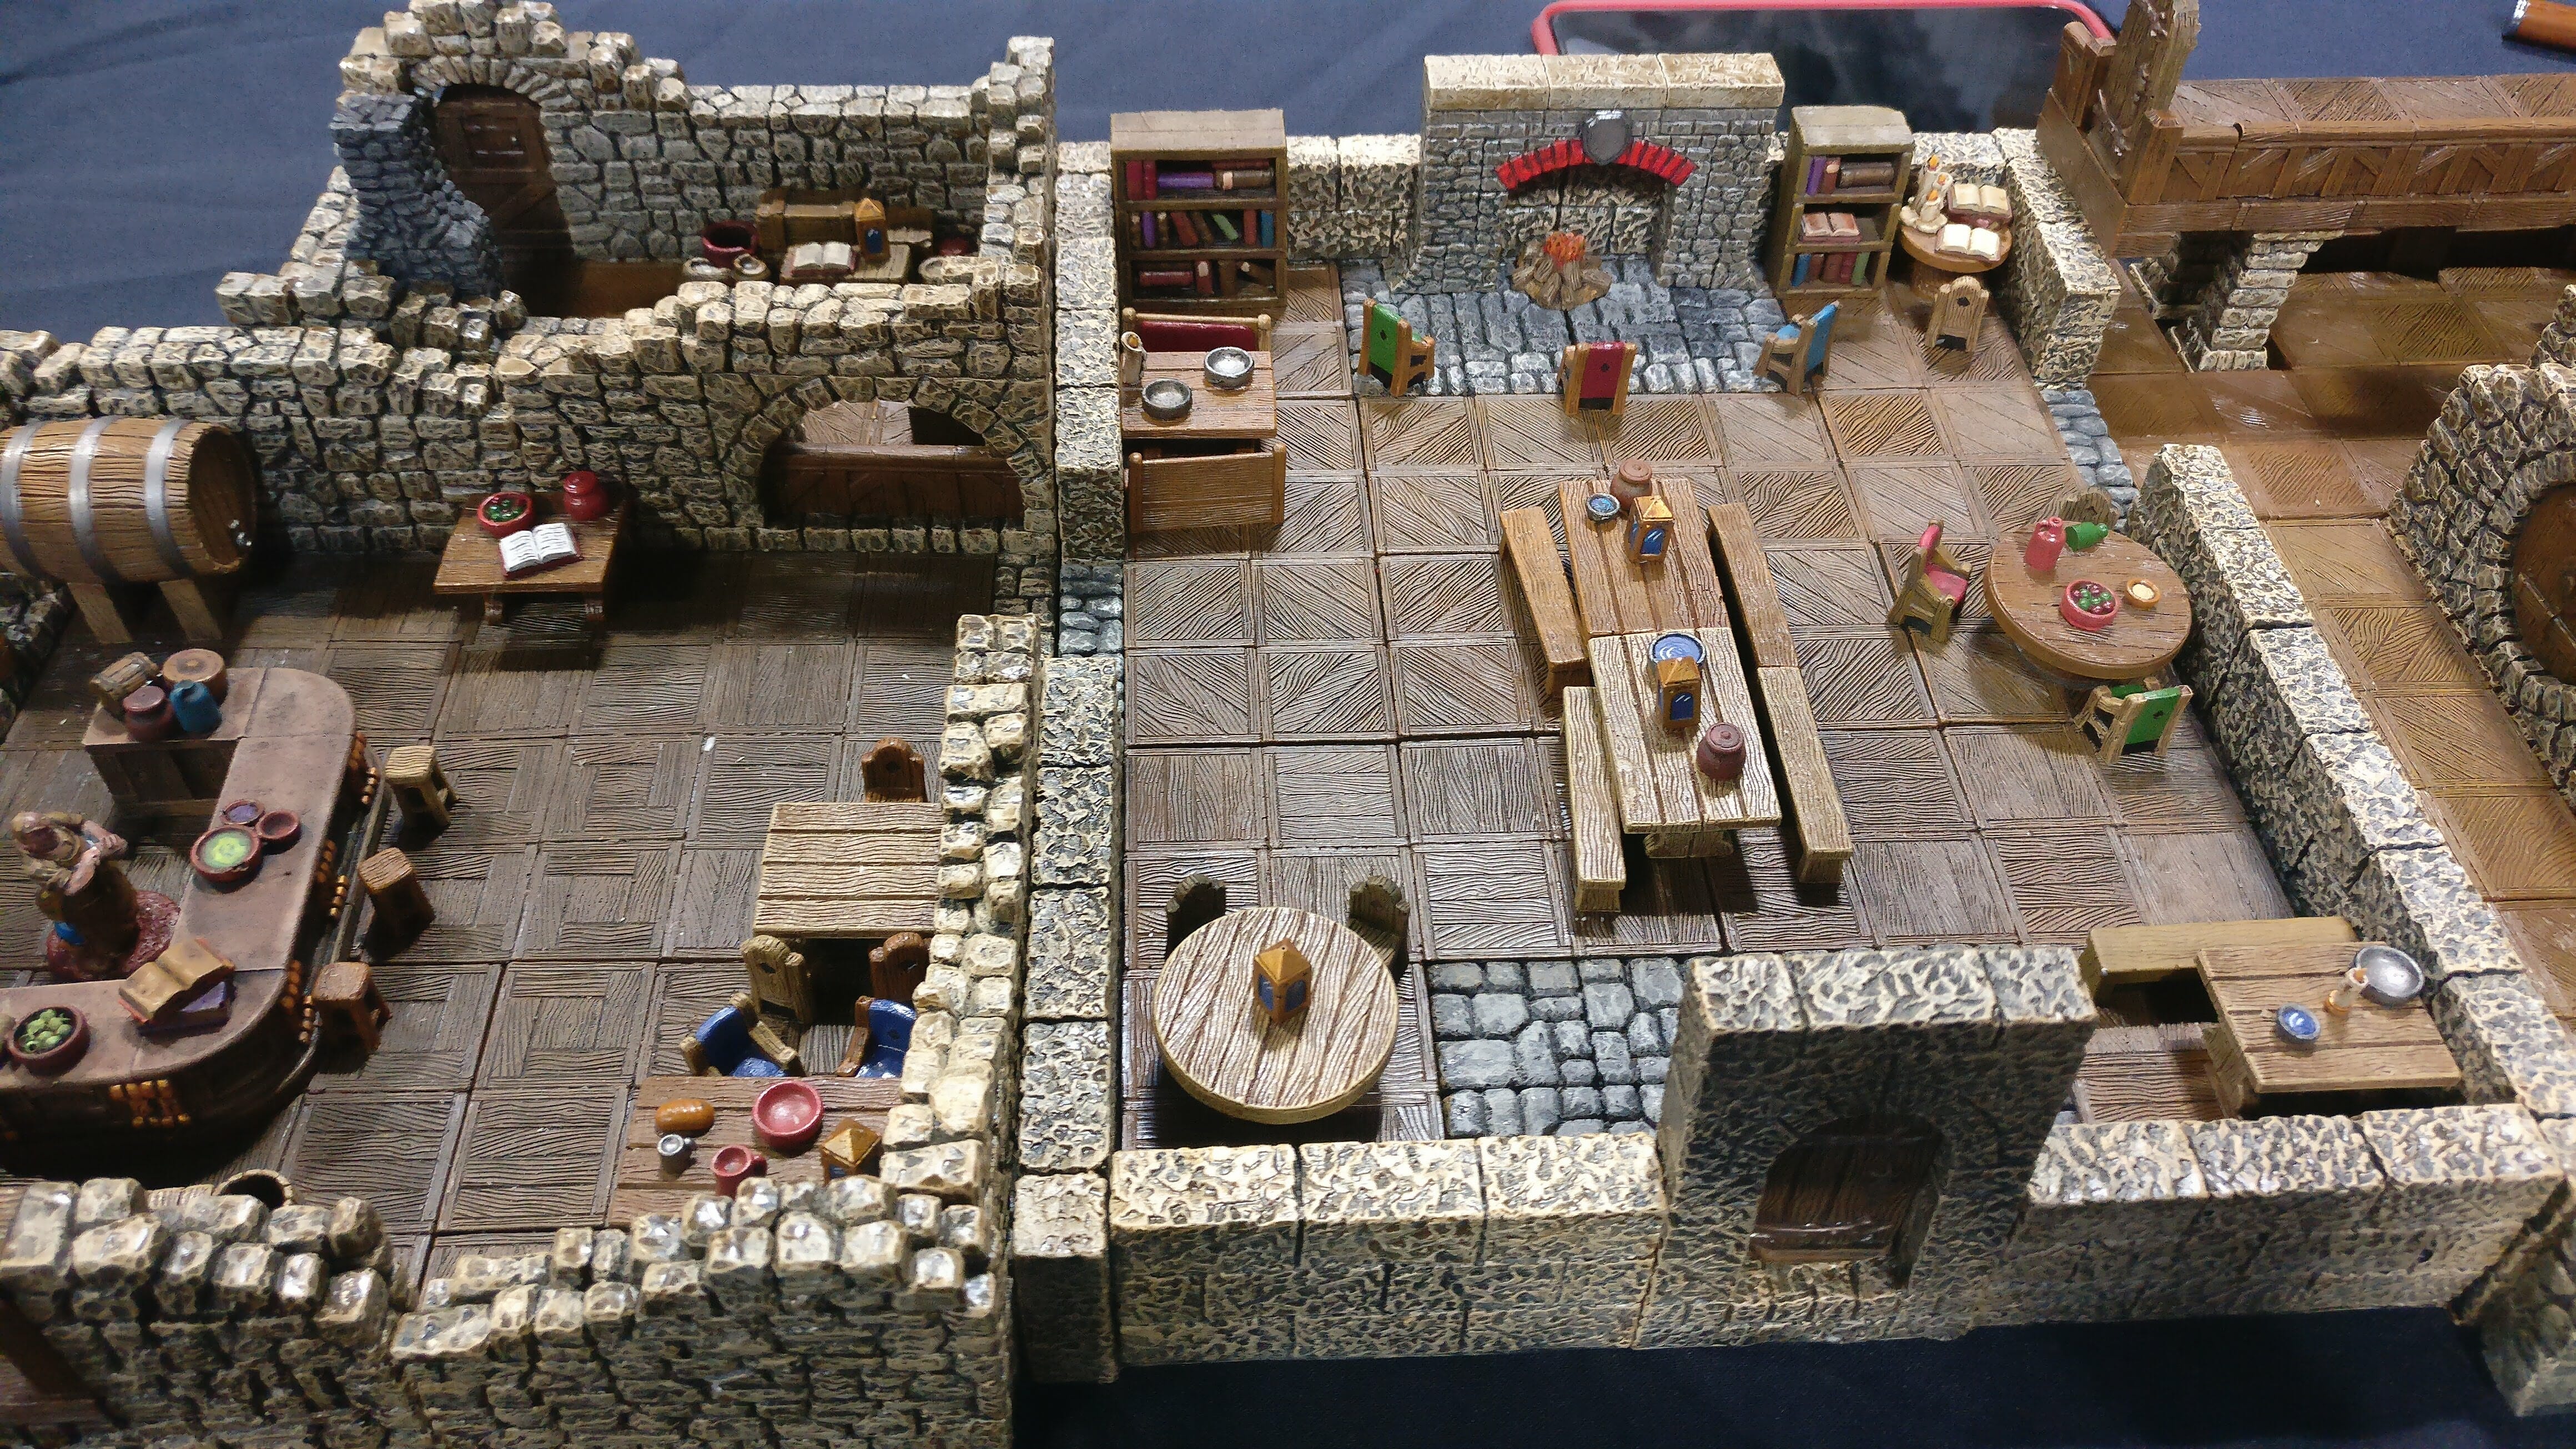 DMB Games' Tavern terrain